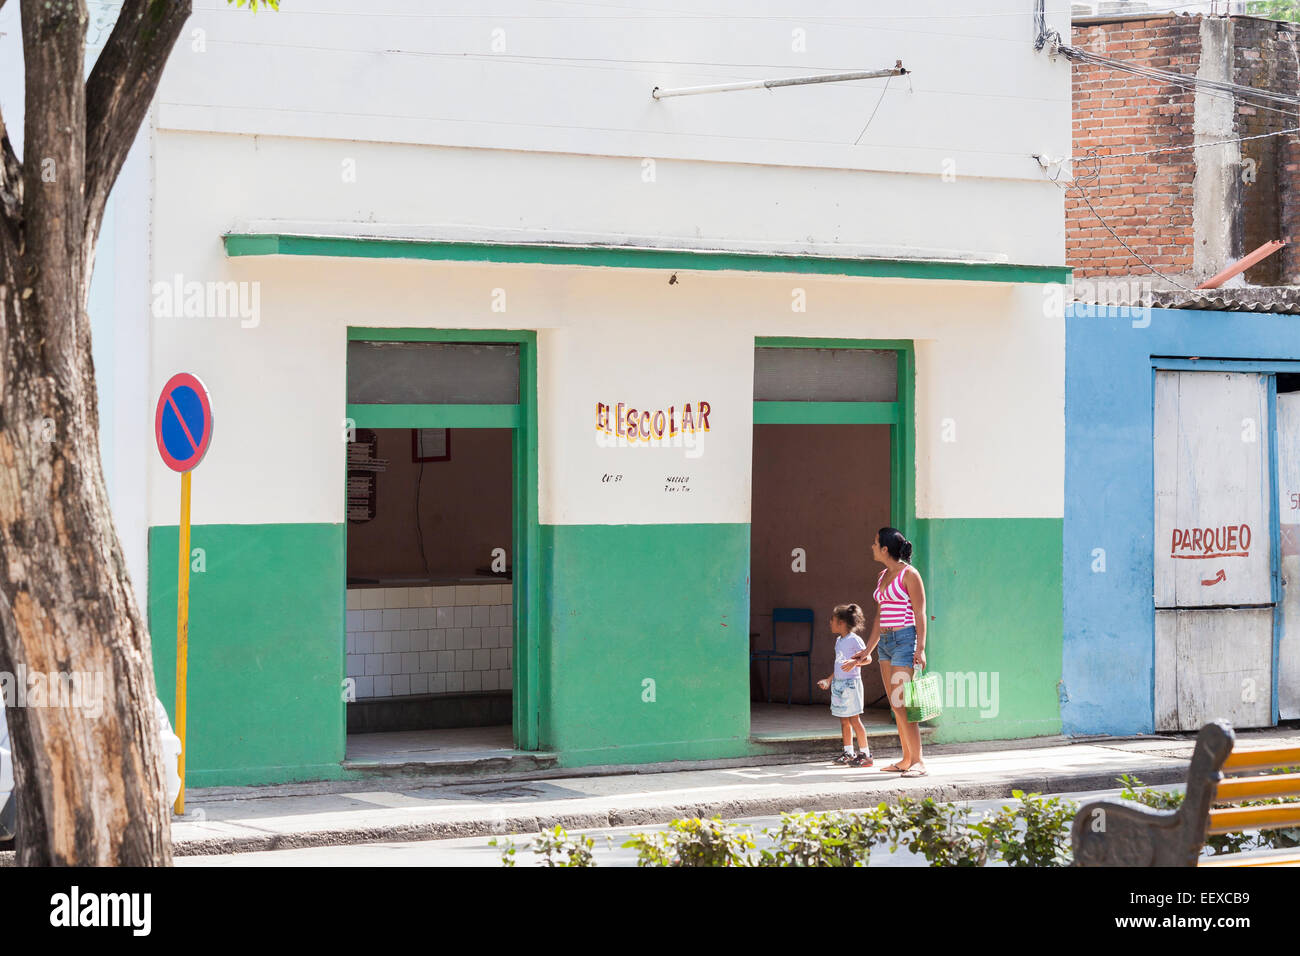 Style de vie cubain : une femme et sa fille à l'extérieur d'une boutique 'El escolar" (l'élève) à Camaguey, Cuba, troisième ville Banque D'Images